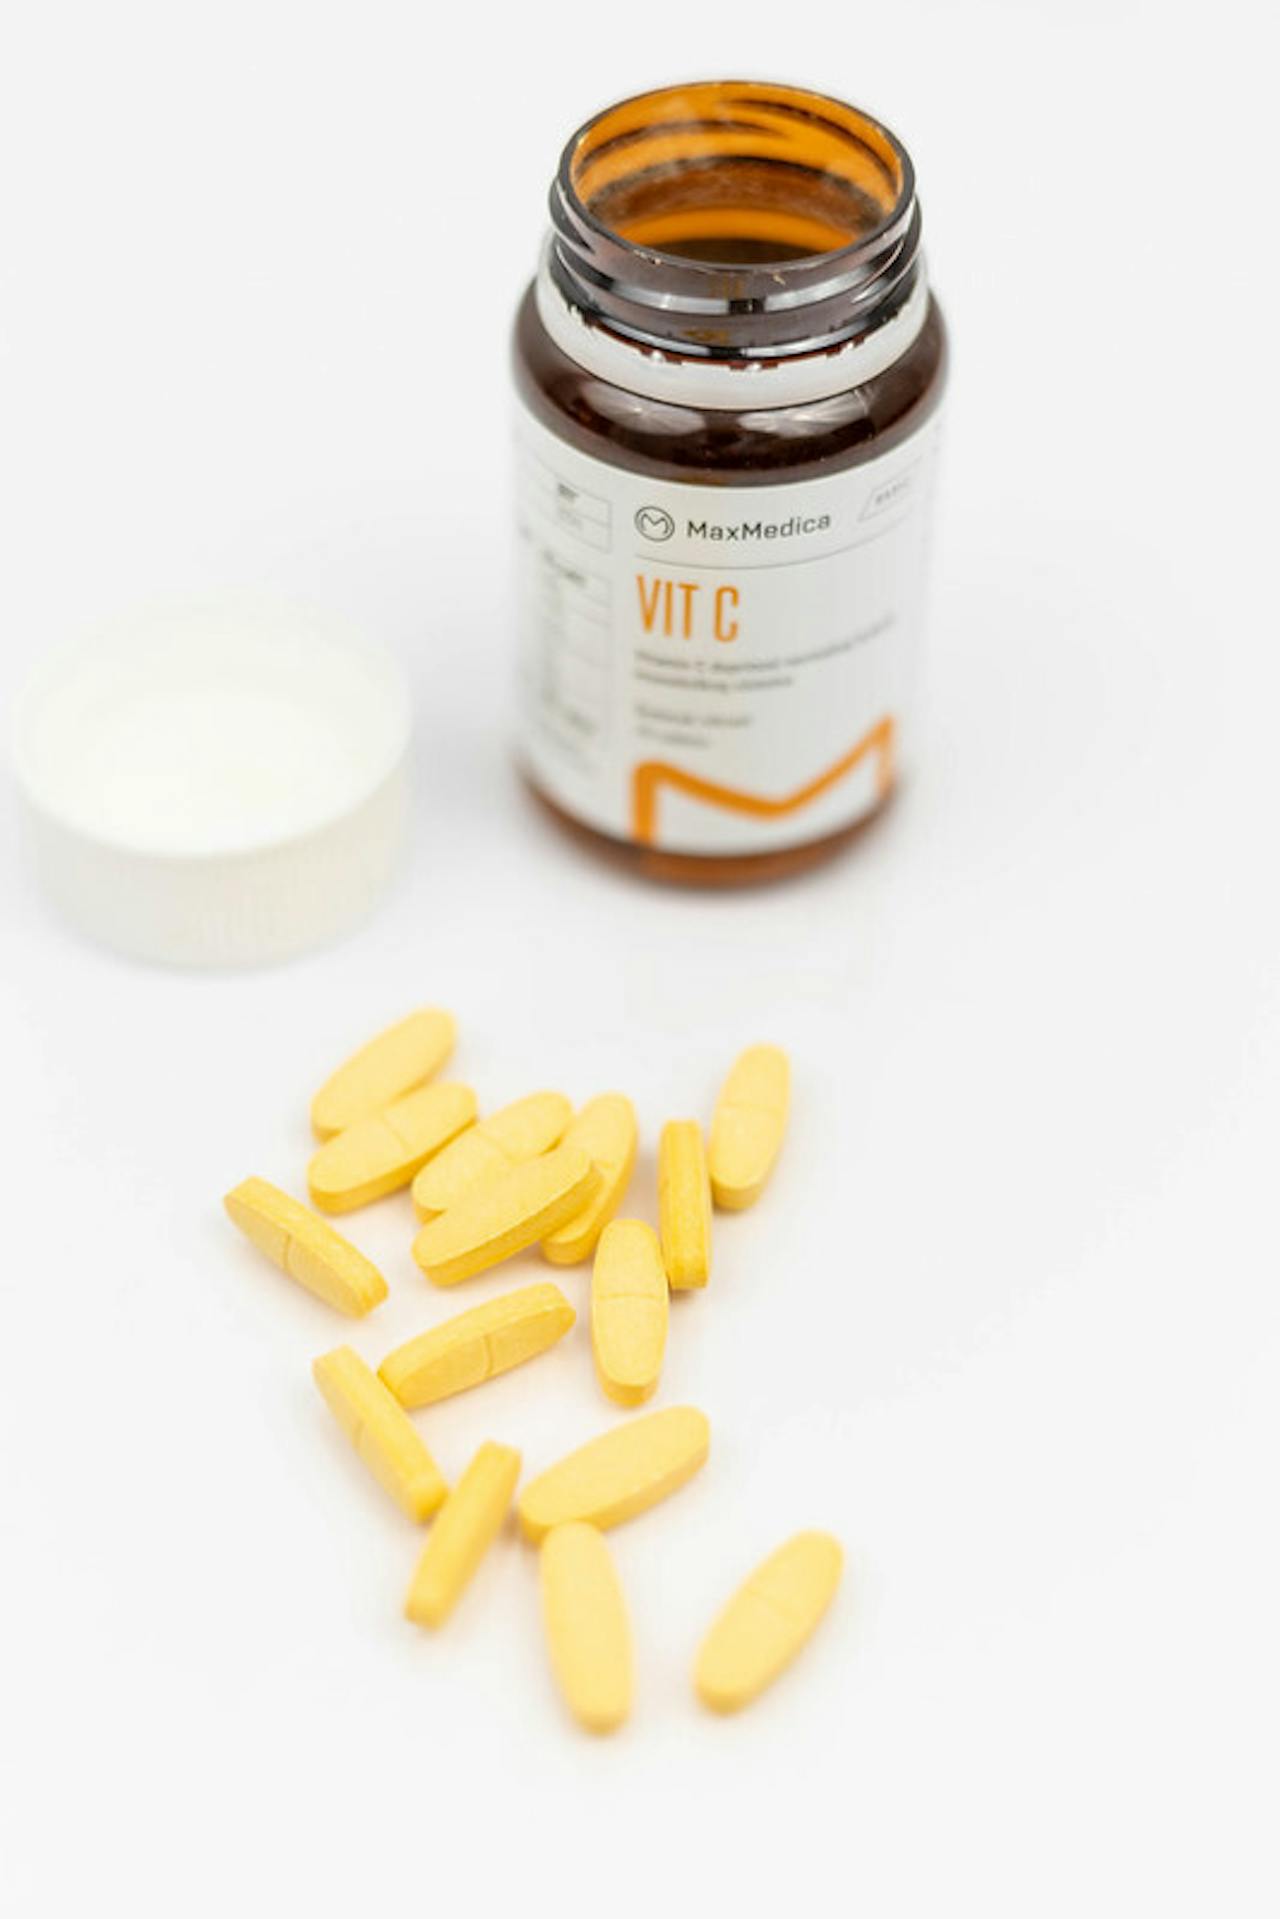 Gele vitamine C-capsules naast een pot op een wit oppervlak.